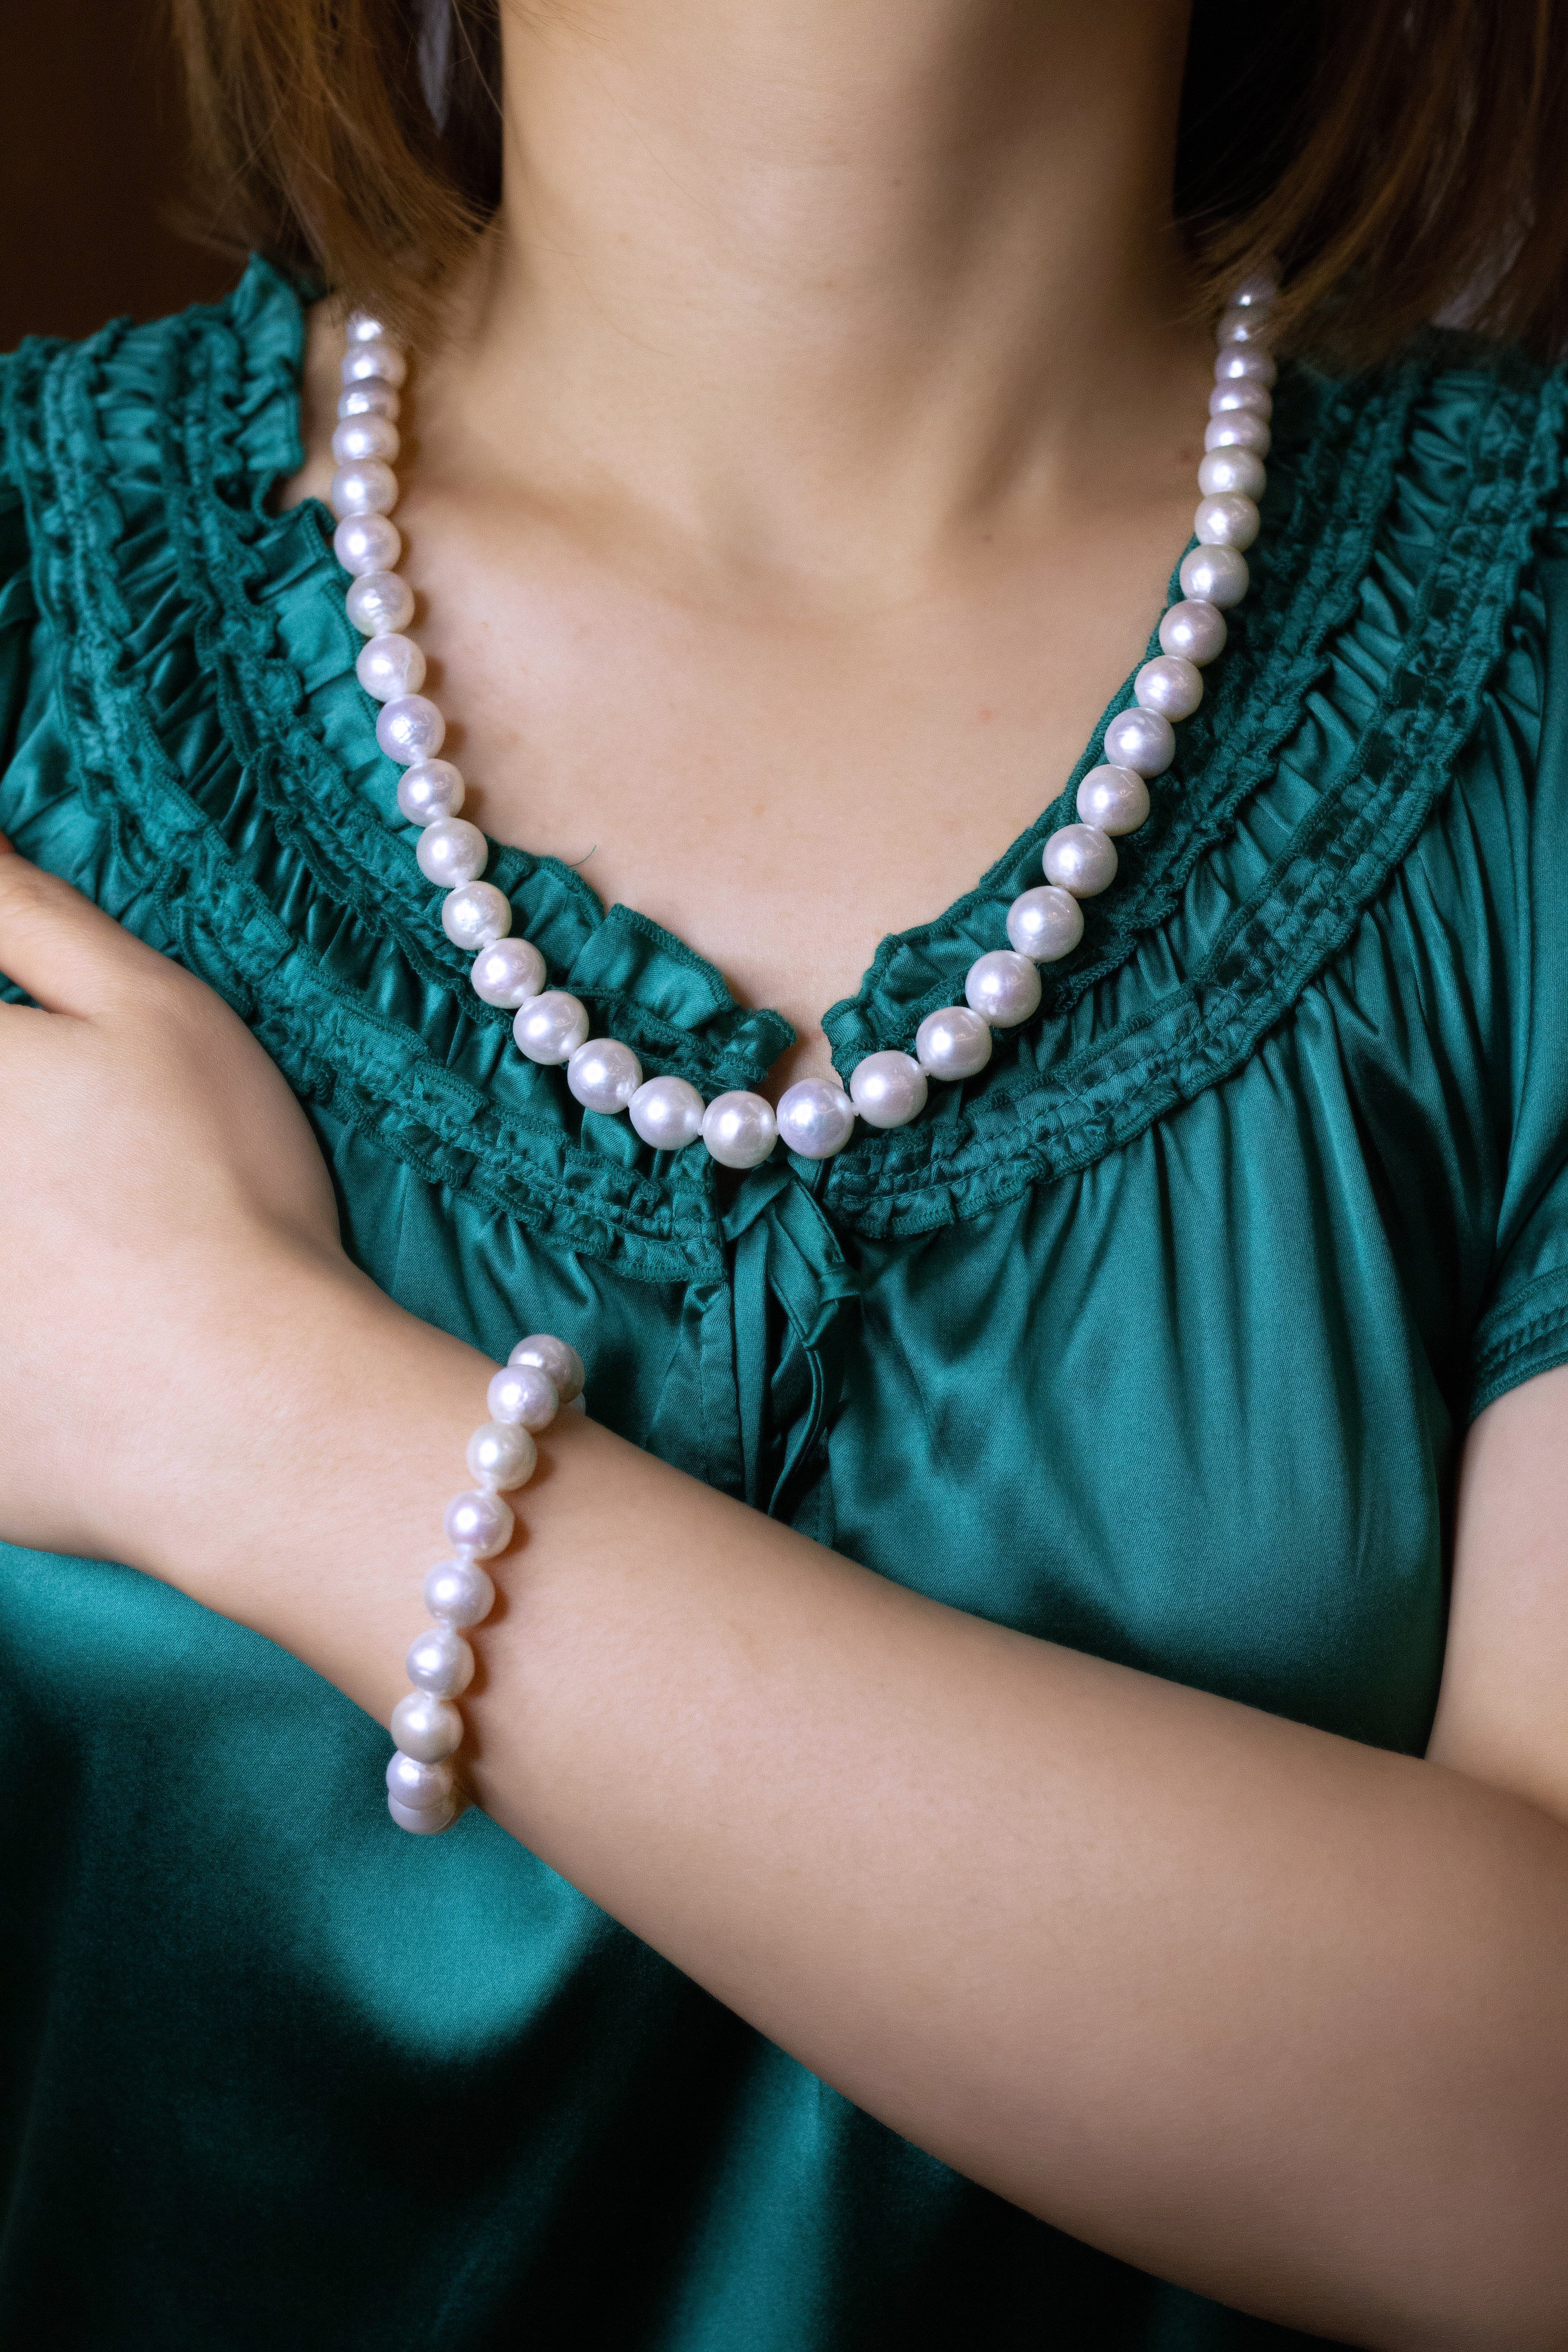 Long Edison Pearl Necklace & Bracelet Set